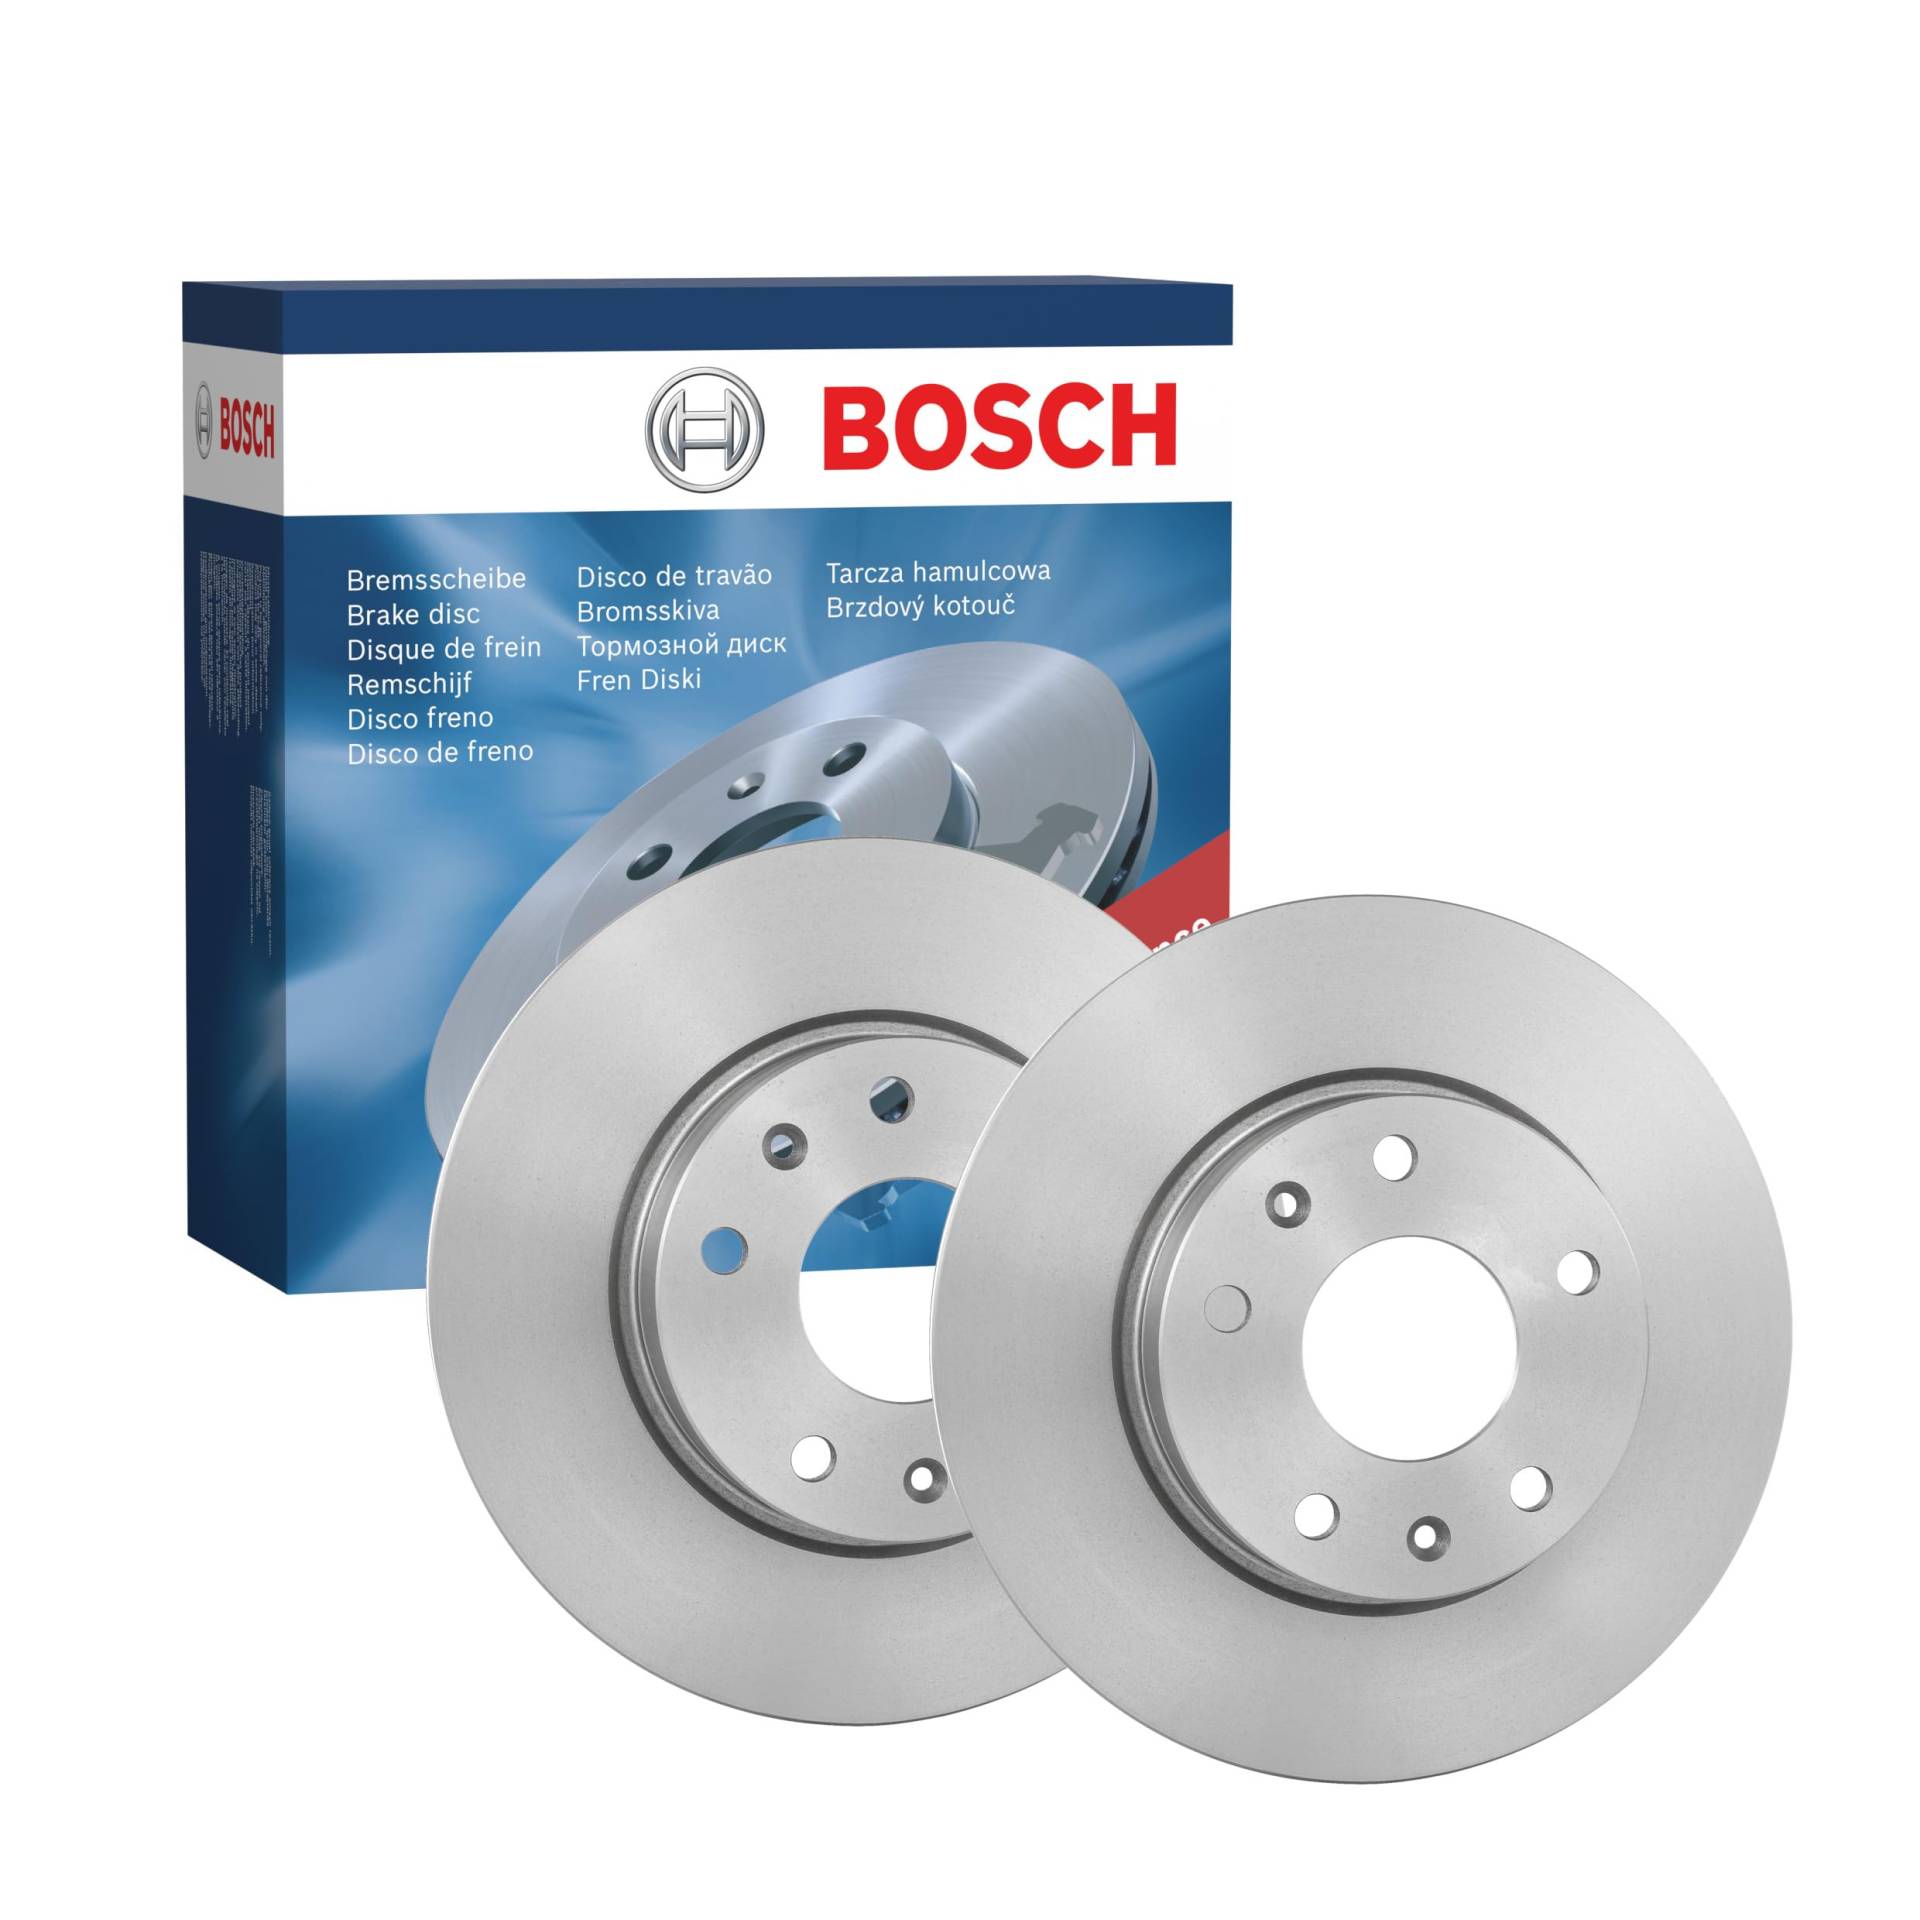 Bosch BD889 Bremsscheiben - Vorderachse - ECE-R90 Zertifizierung - zwei Bremsscheiben pro Set von Bosch Automotive